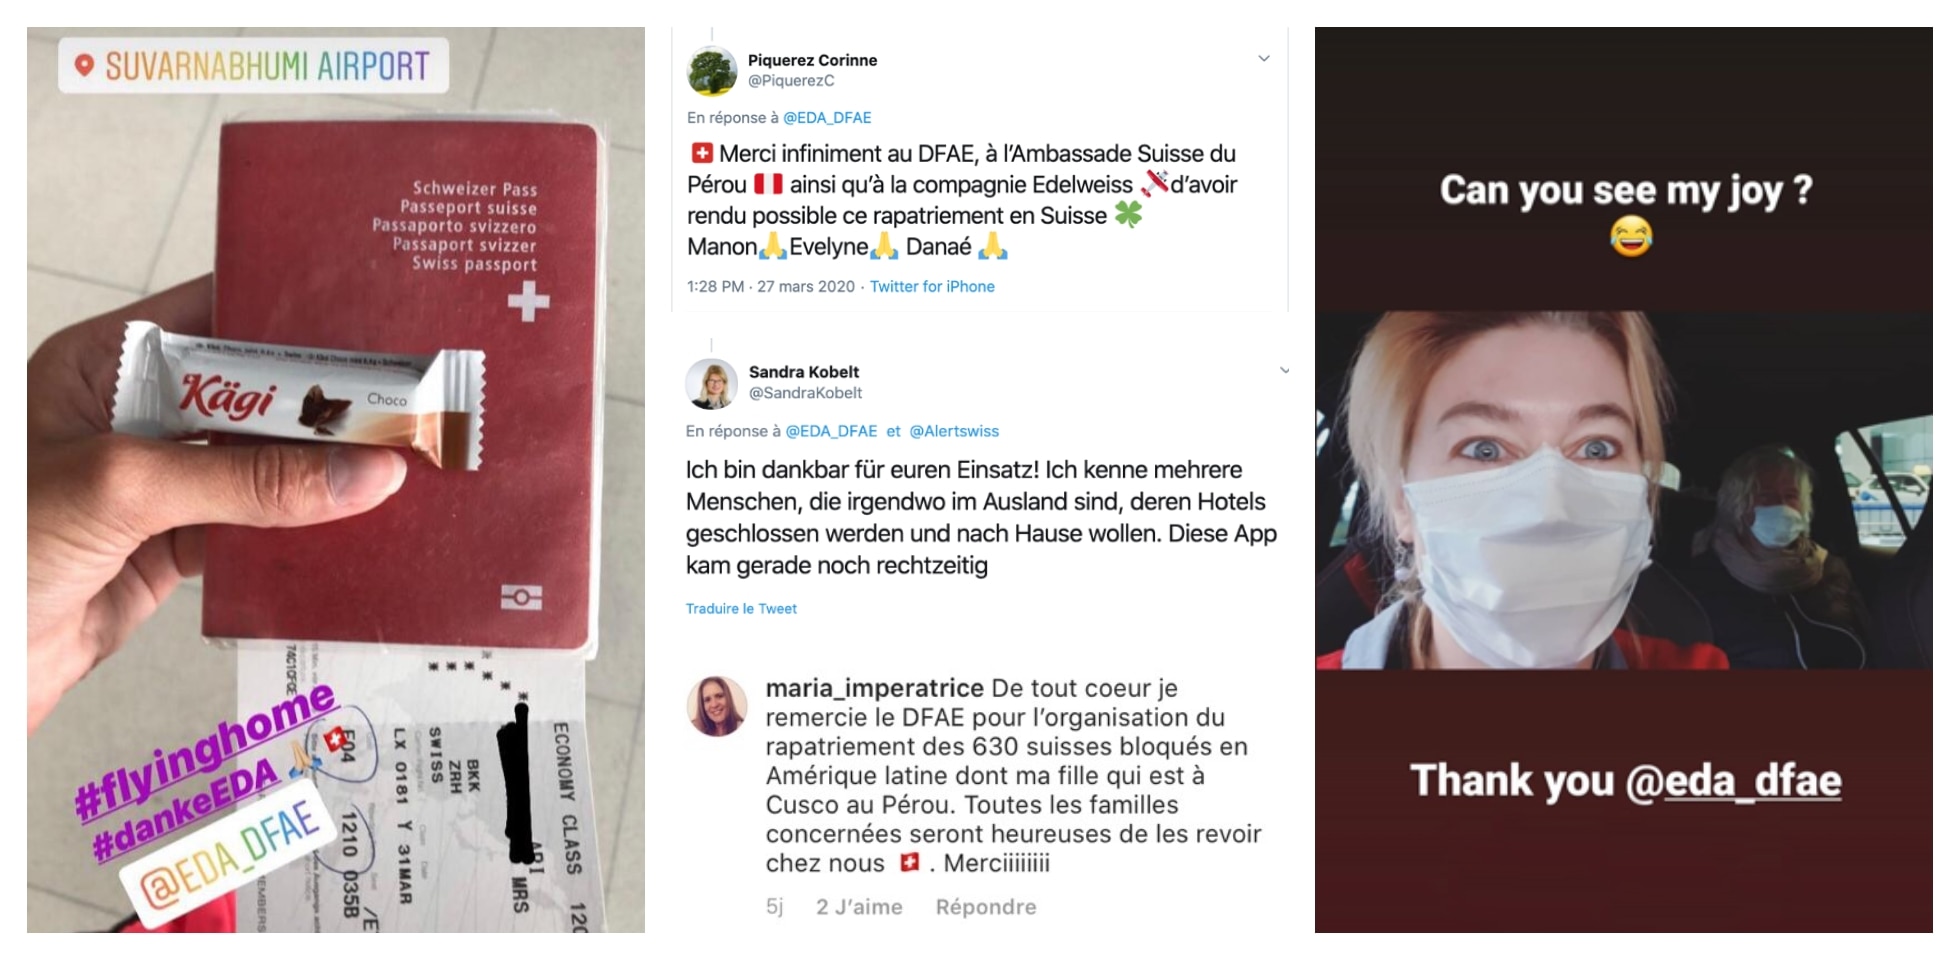 Captures d'écran des messages Twitter et Instagram dans lesquels les voyageurs suisses remercient le DFAE pour l'action de rappel.